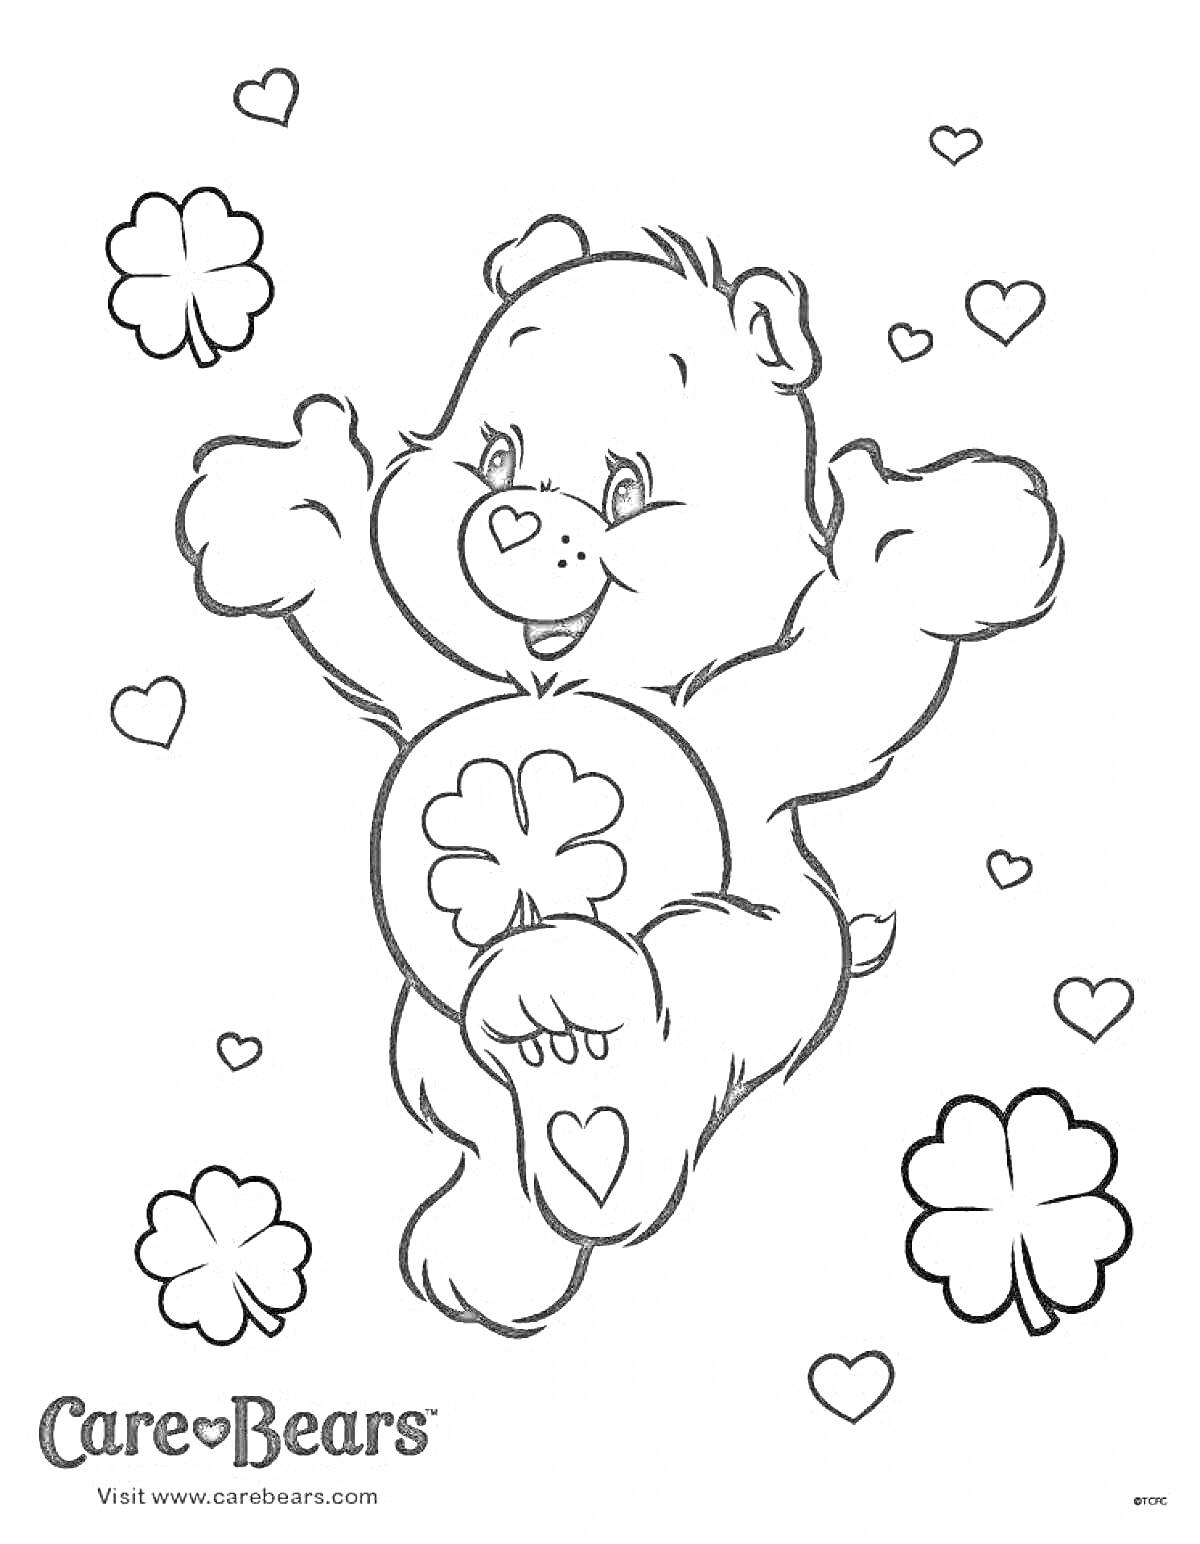 Раскраска Медвежонок с клевером на животе, вокруг сердца и клеверы